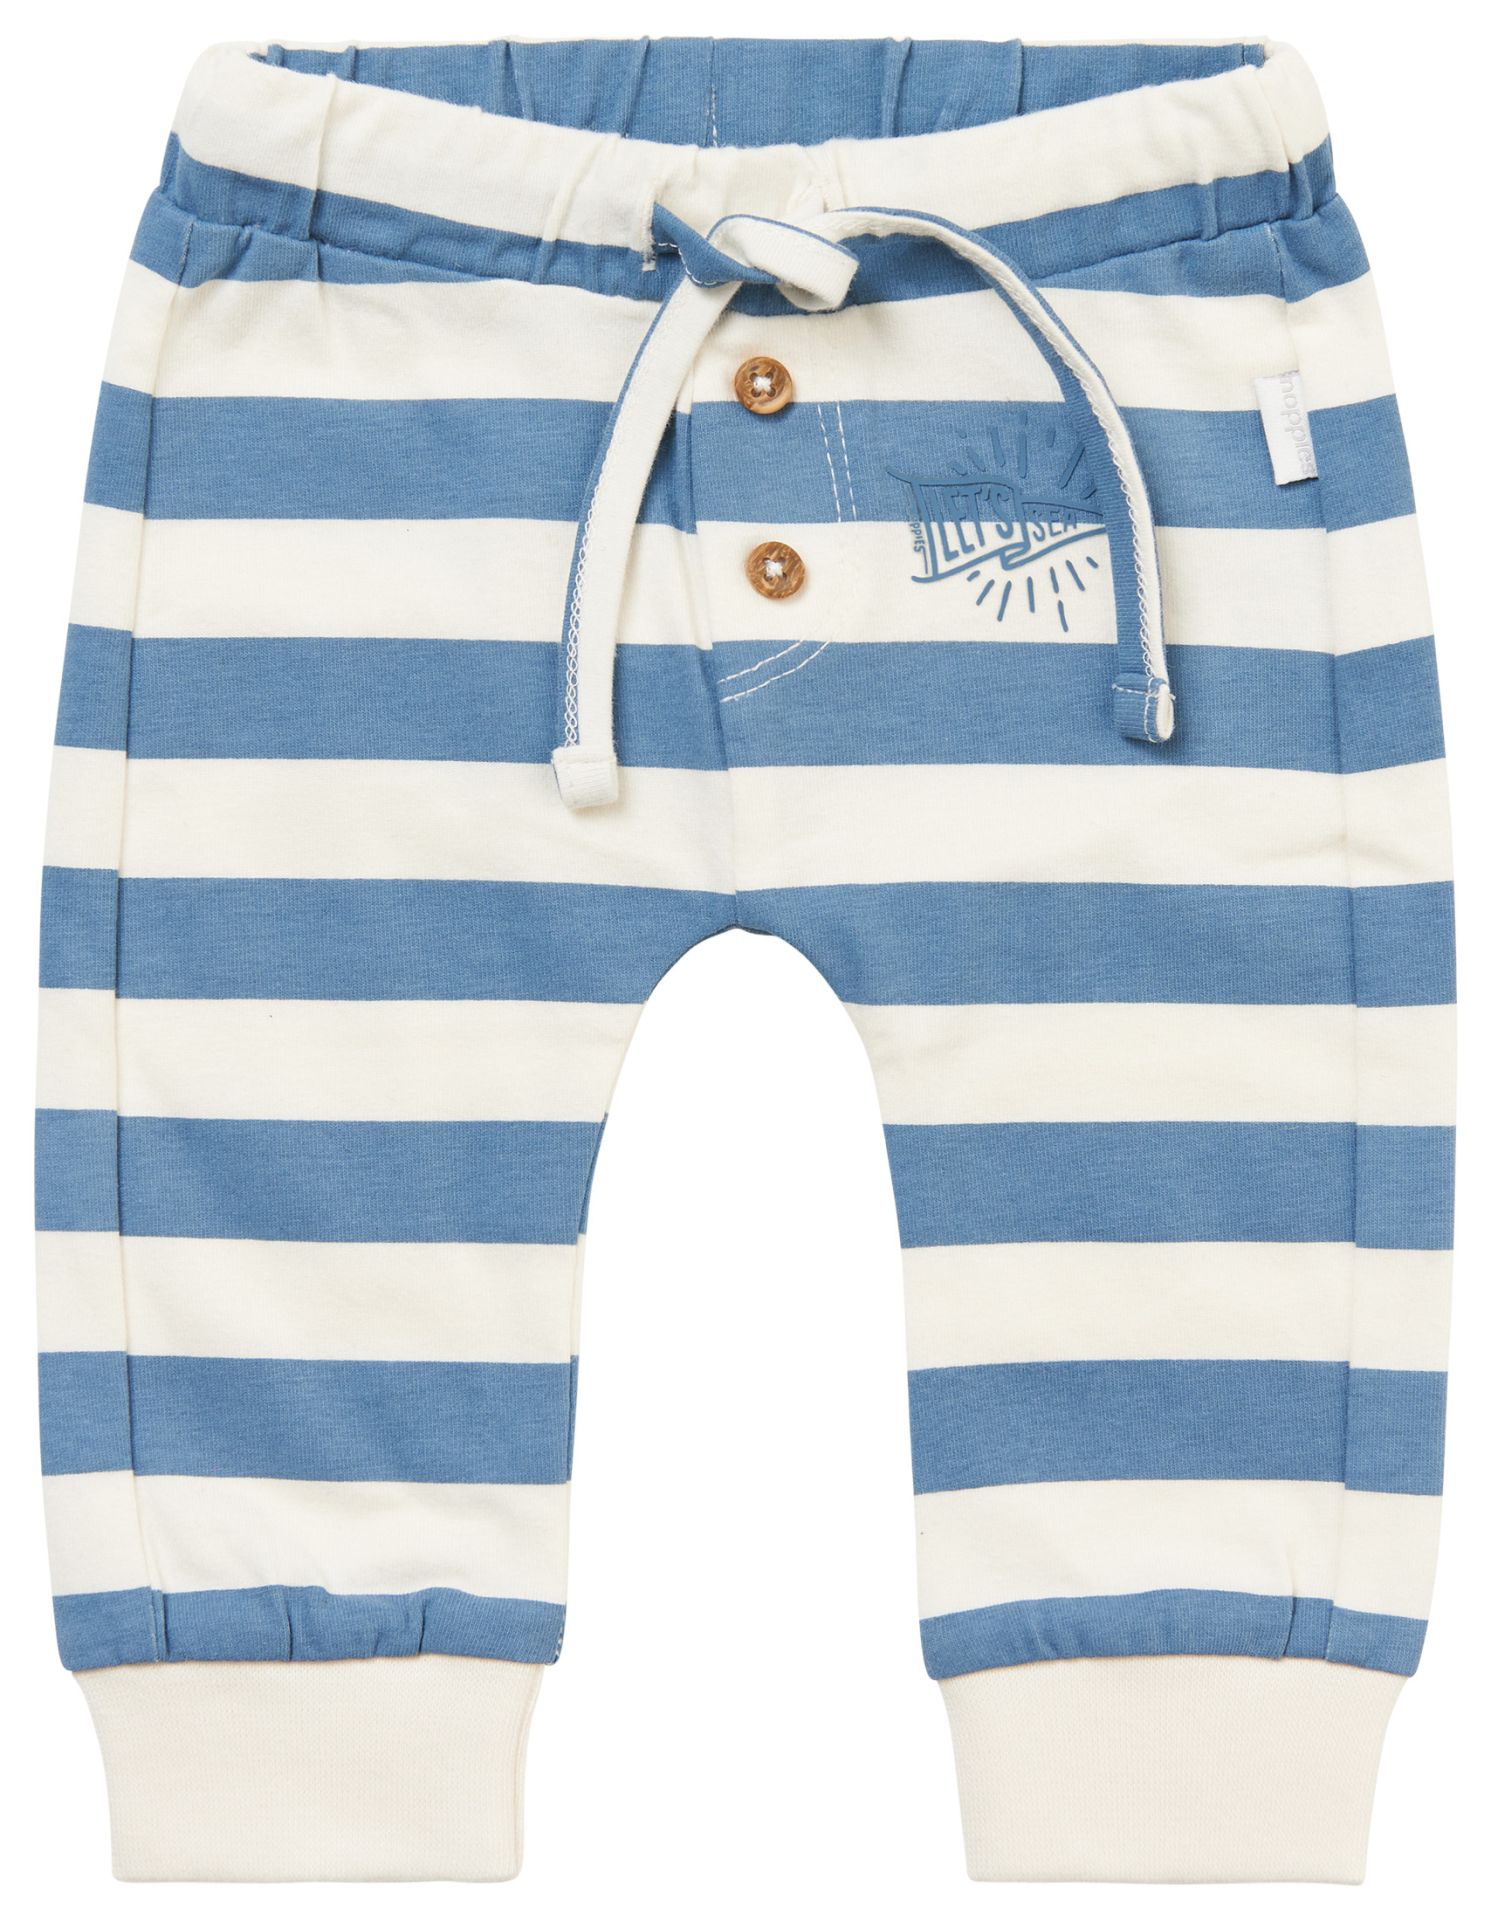 Pants Mauriceville I stripe blue (Gr.86)